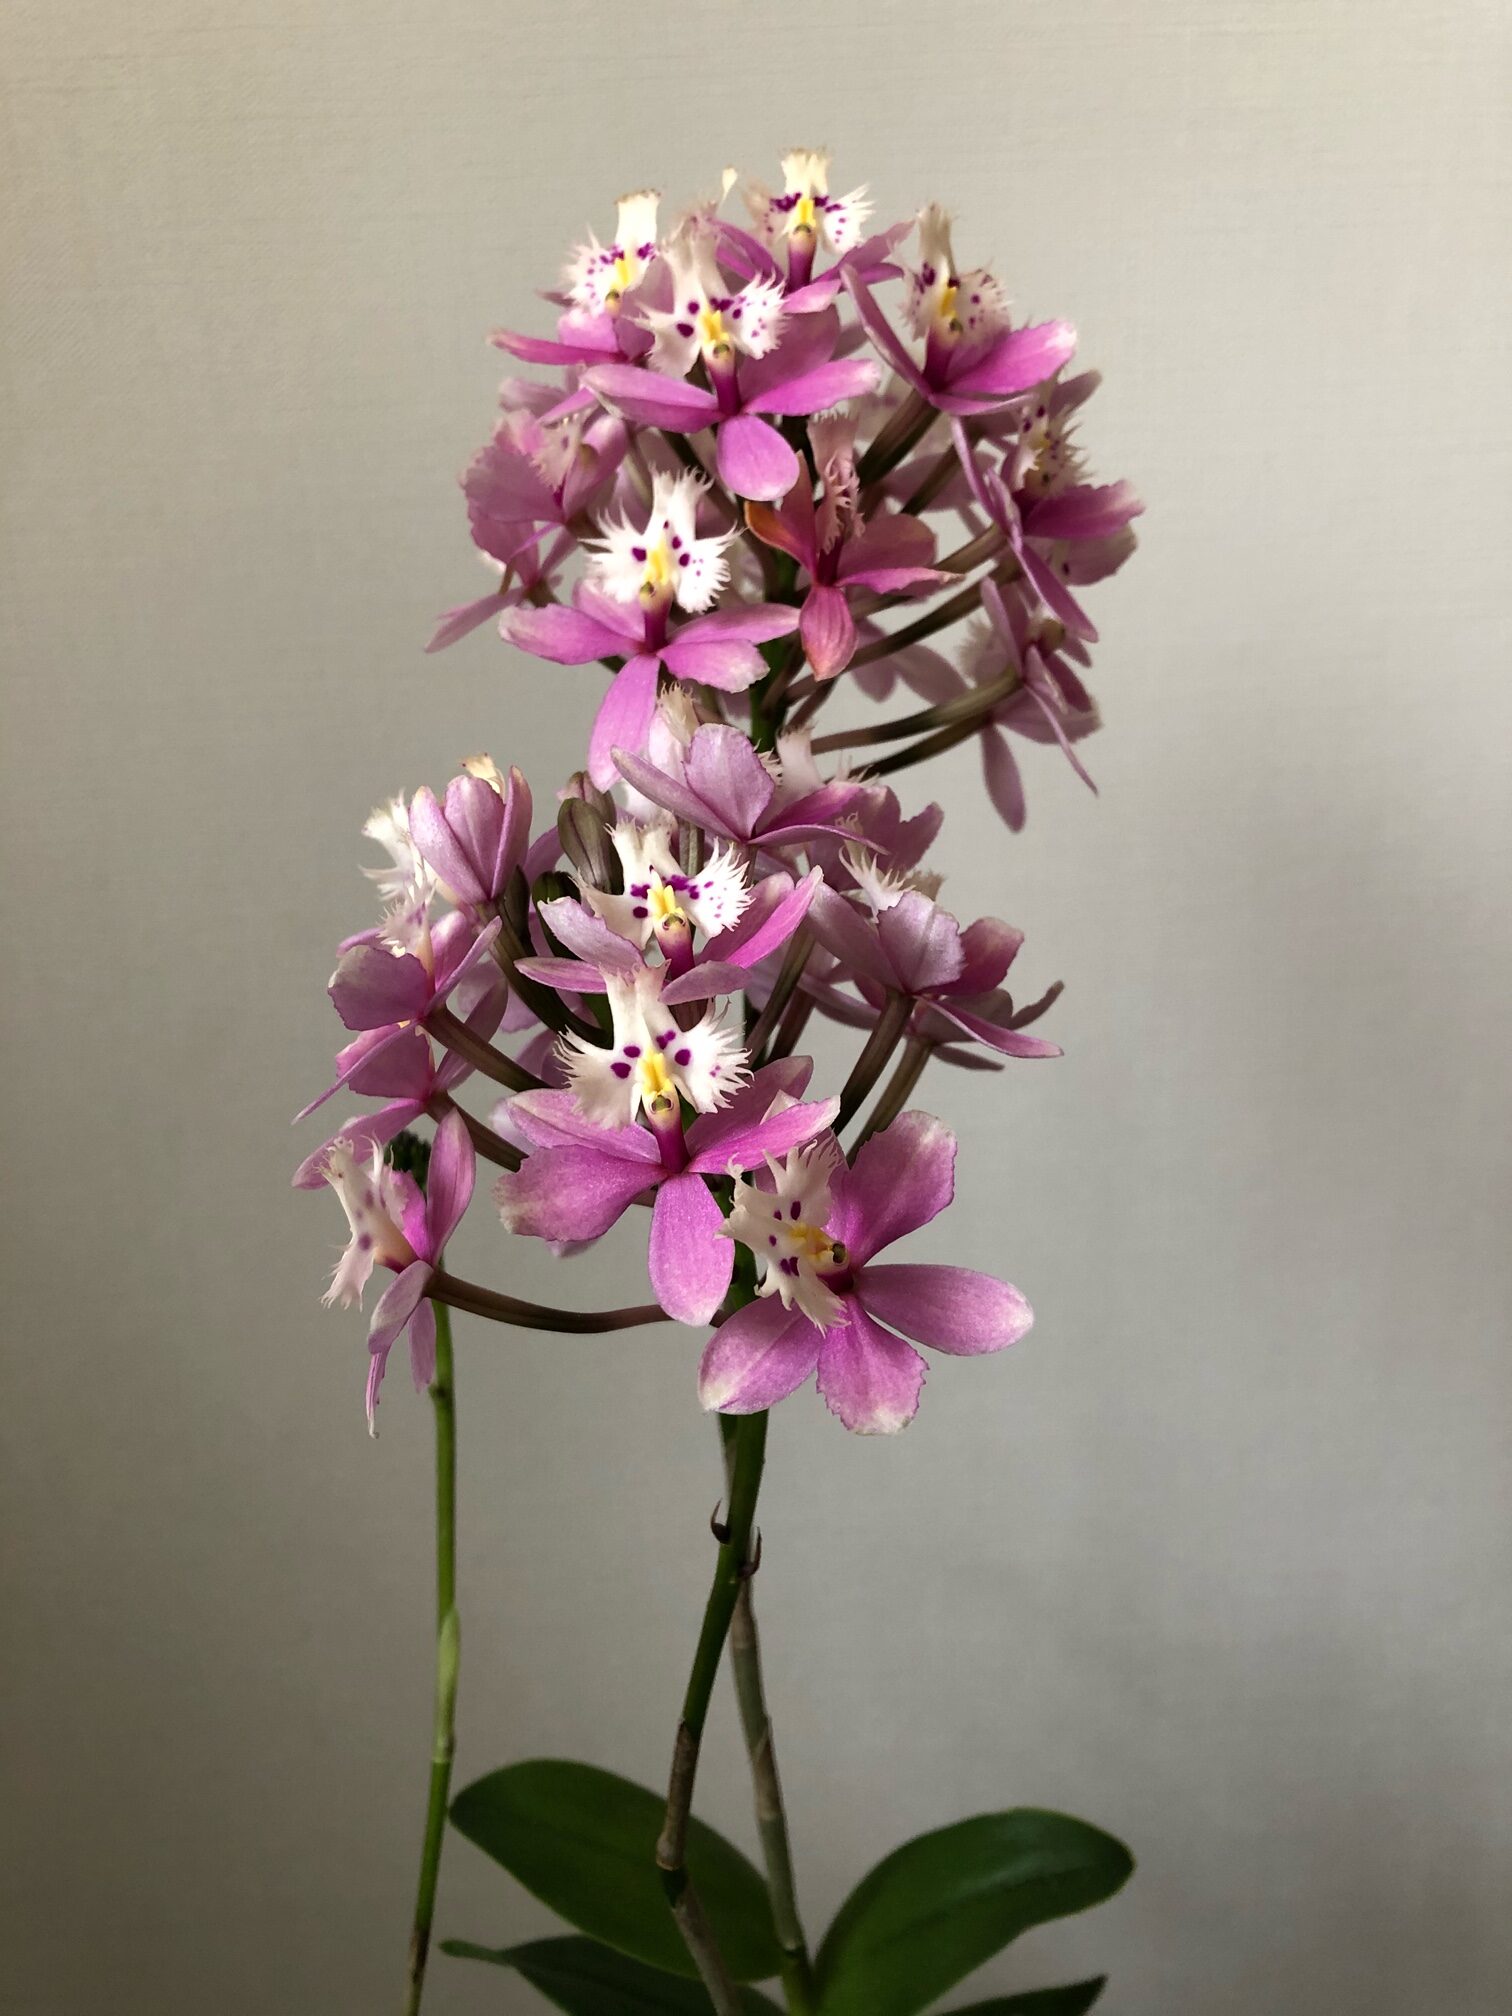 Epidendrum MarineValley x Strauberry Valley　上田順子